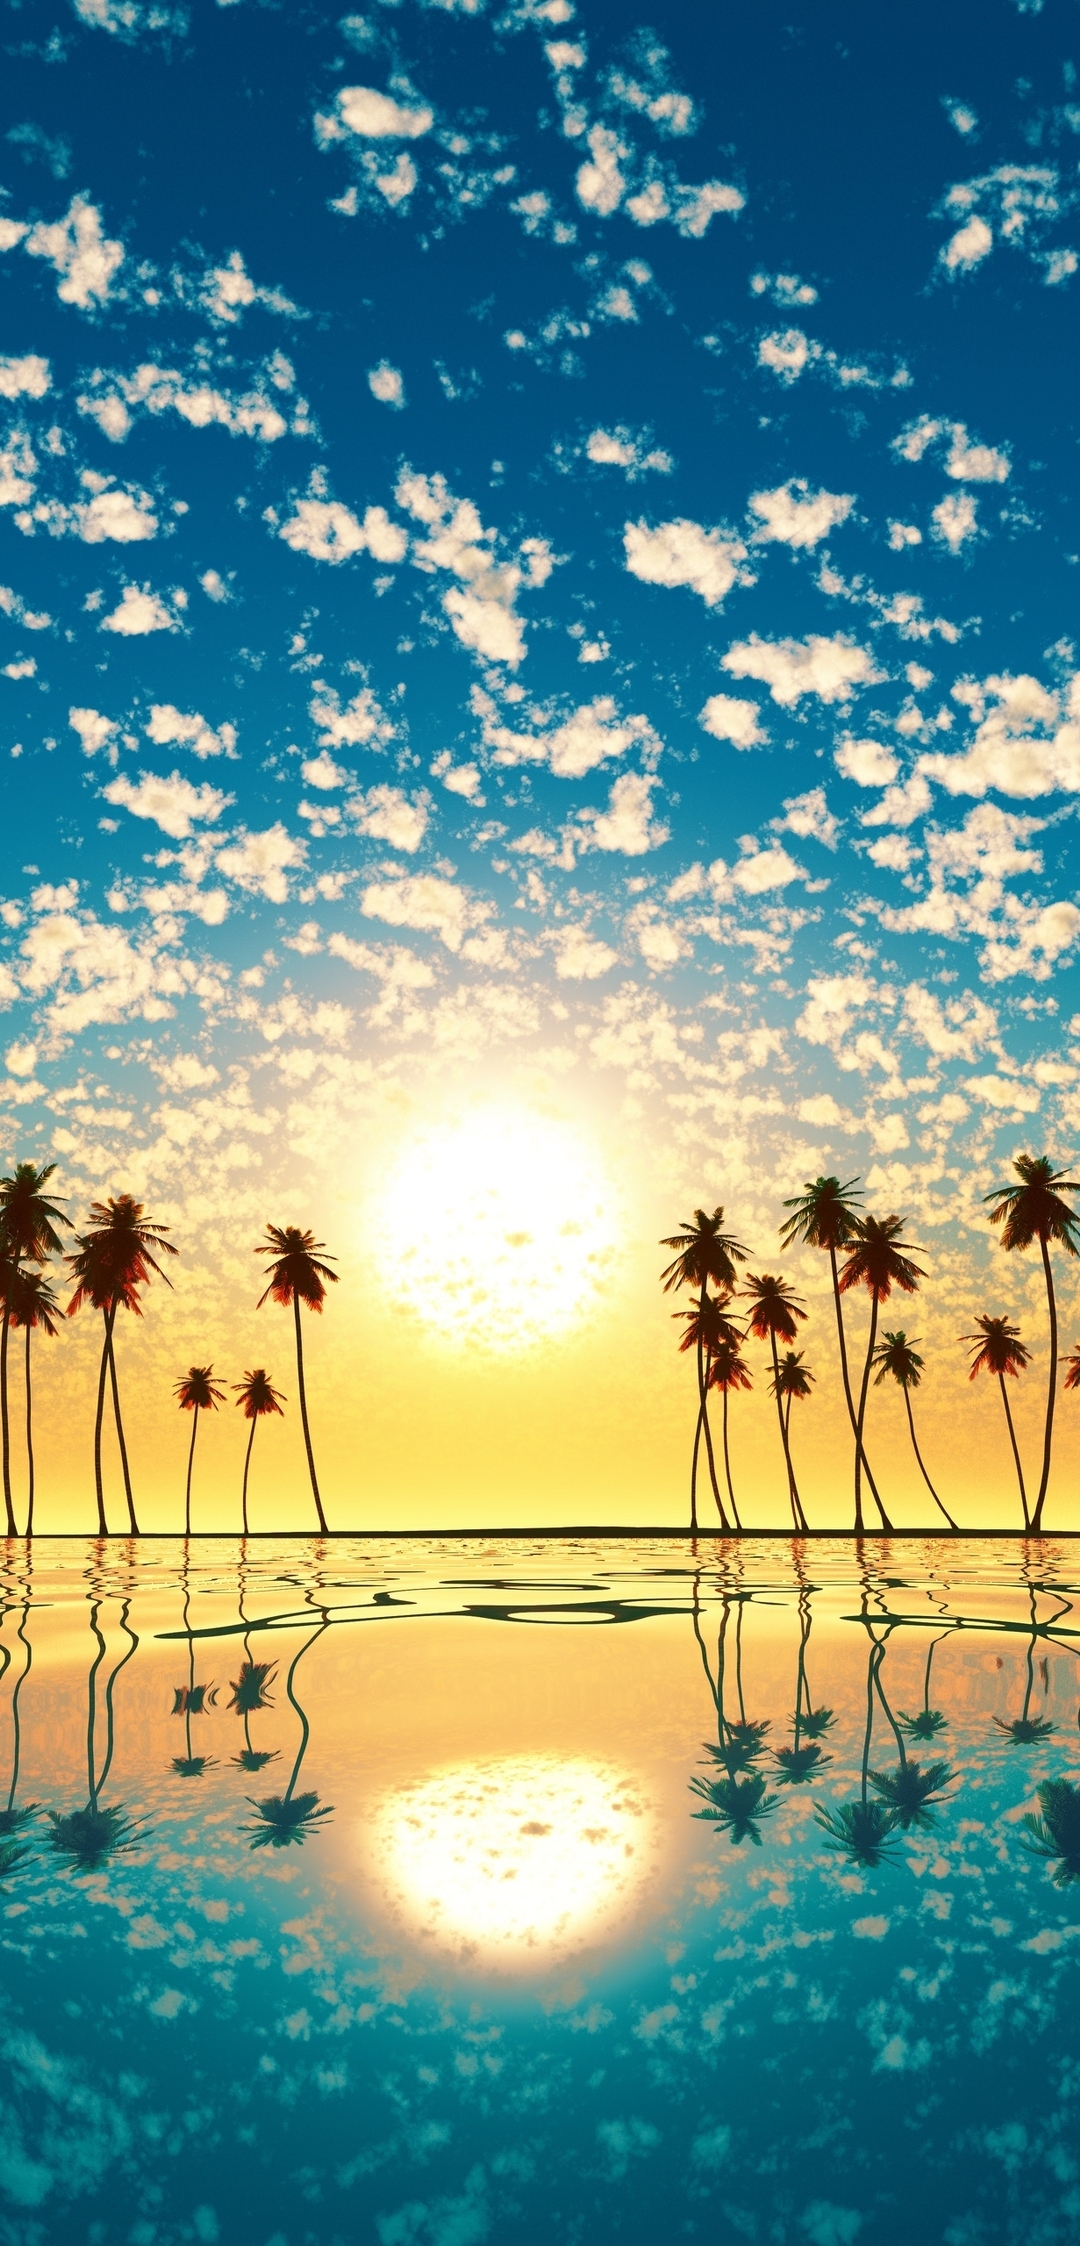 Картинка: Пейзаж, закат, солнце, небо, облака, остров, океан, пальмы, вода, отражение, горизонт